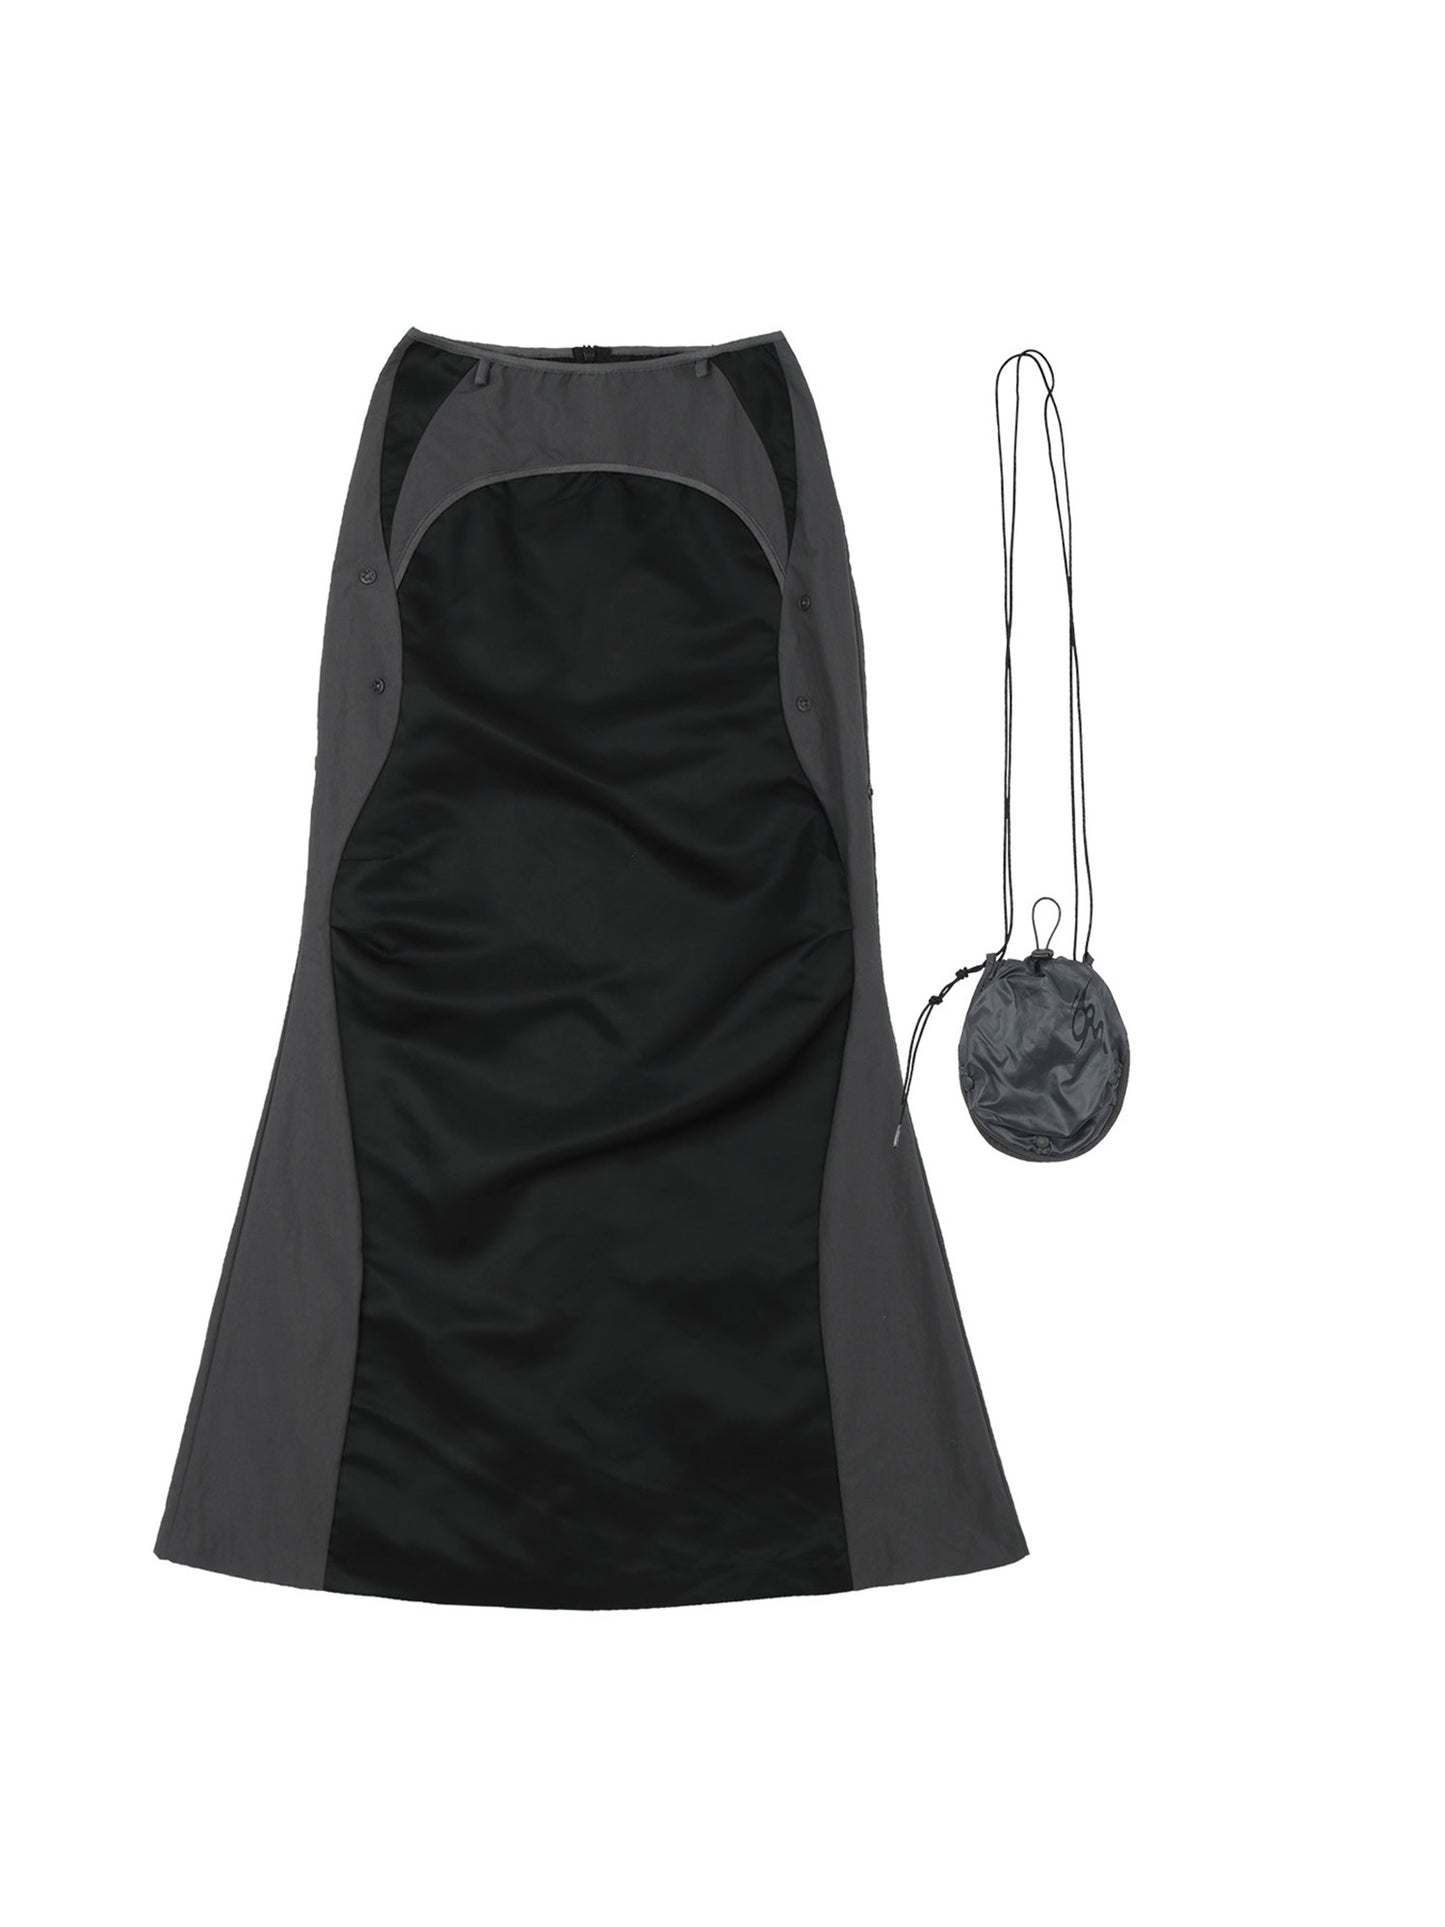 Pocket bag long skirt black